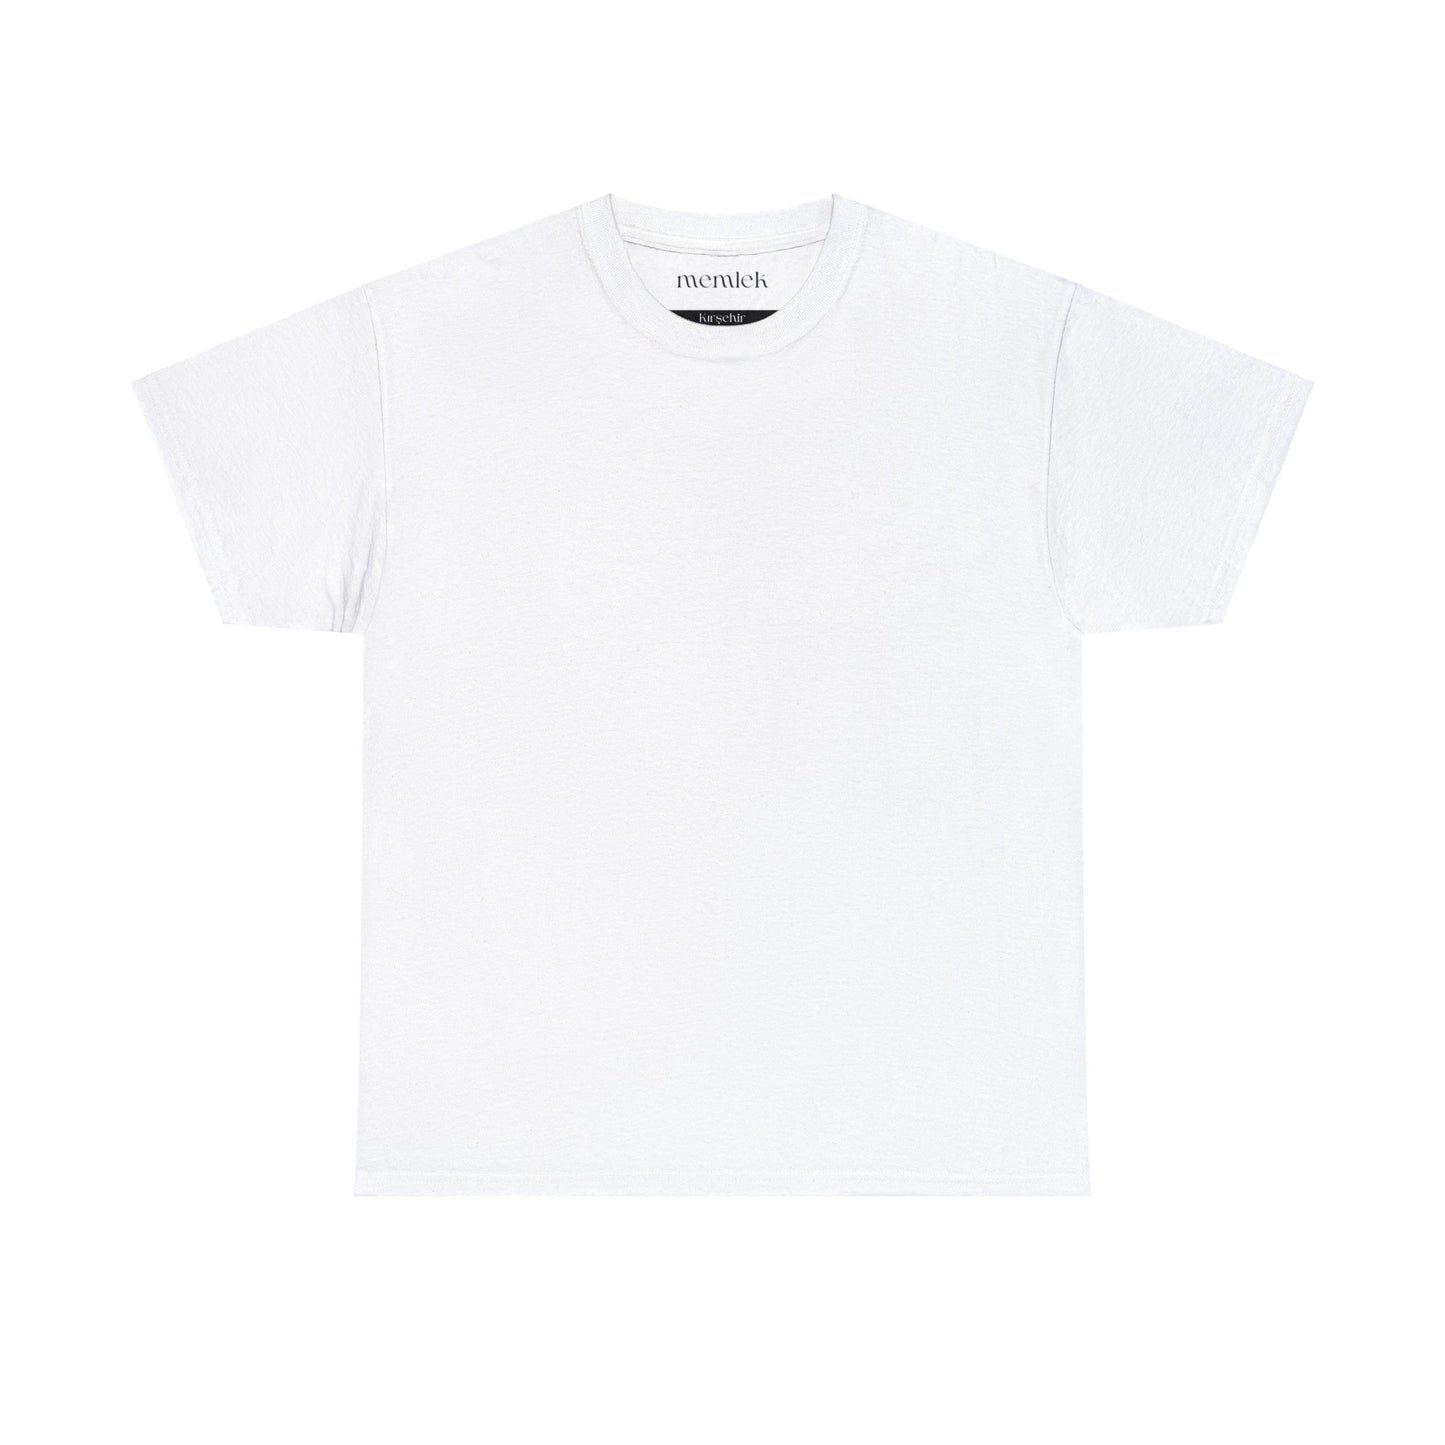 Siyah Lale - 40 Kırşehir - T-Shirt - Back Print - Black/White